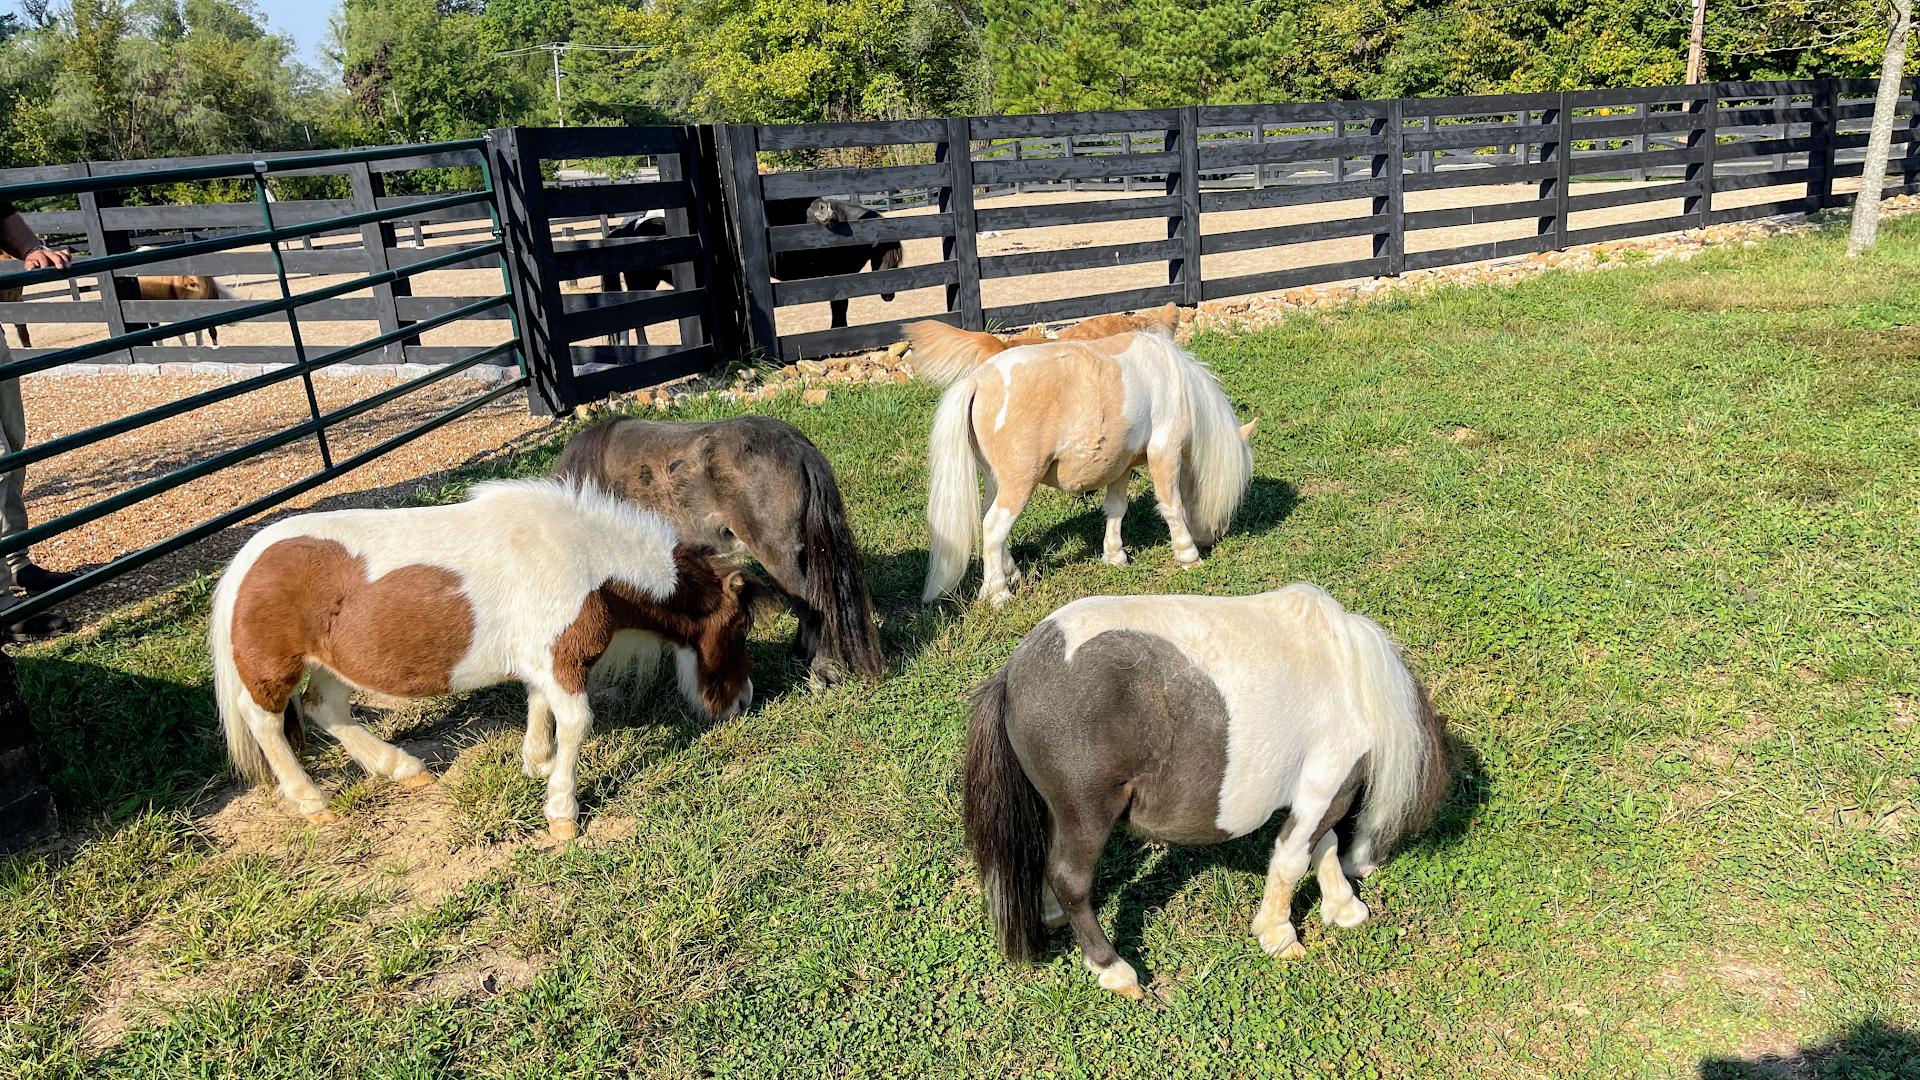 R & R Ranch Miniature Horse Sanctuary